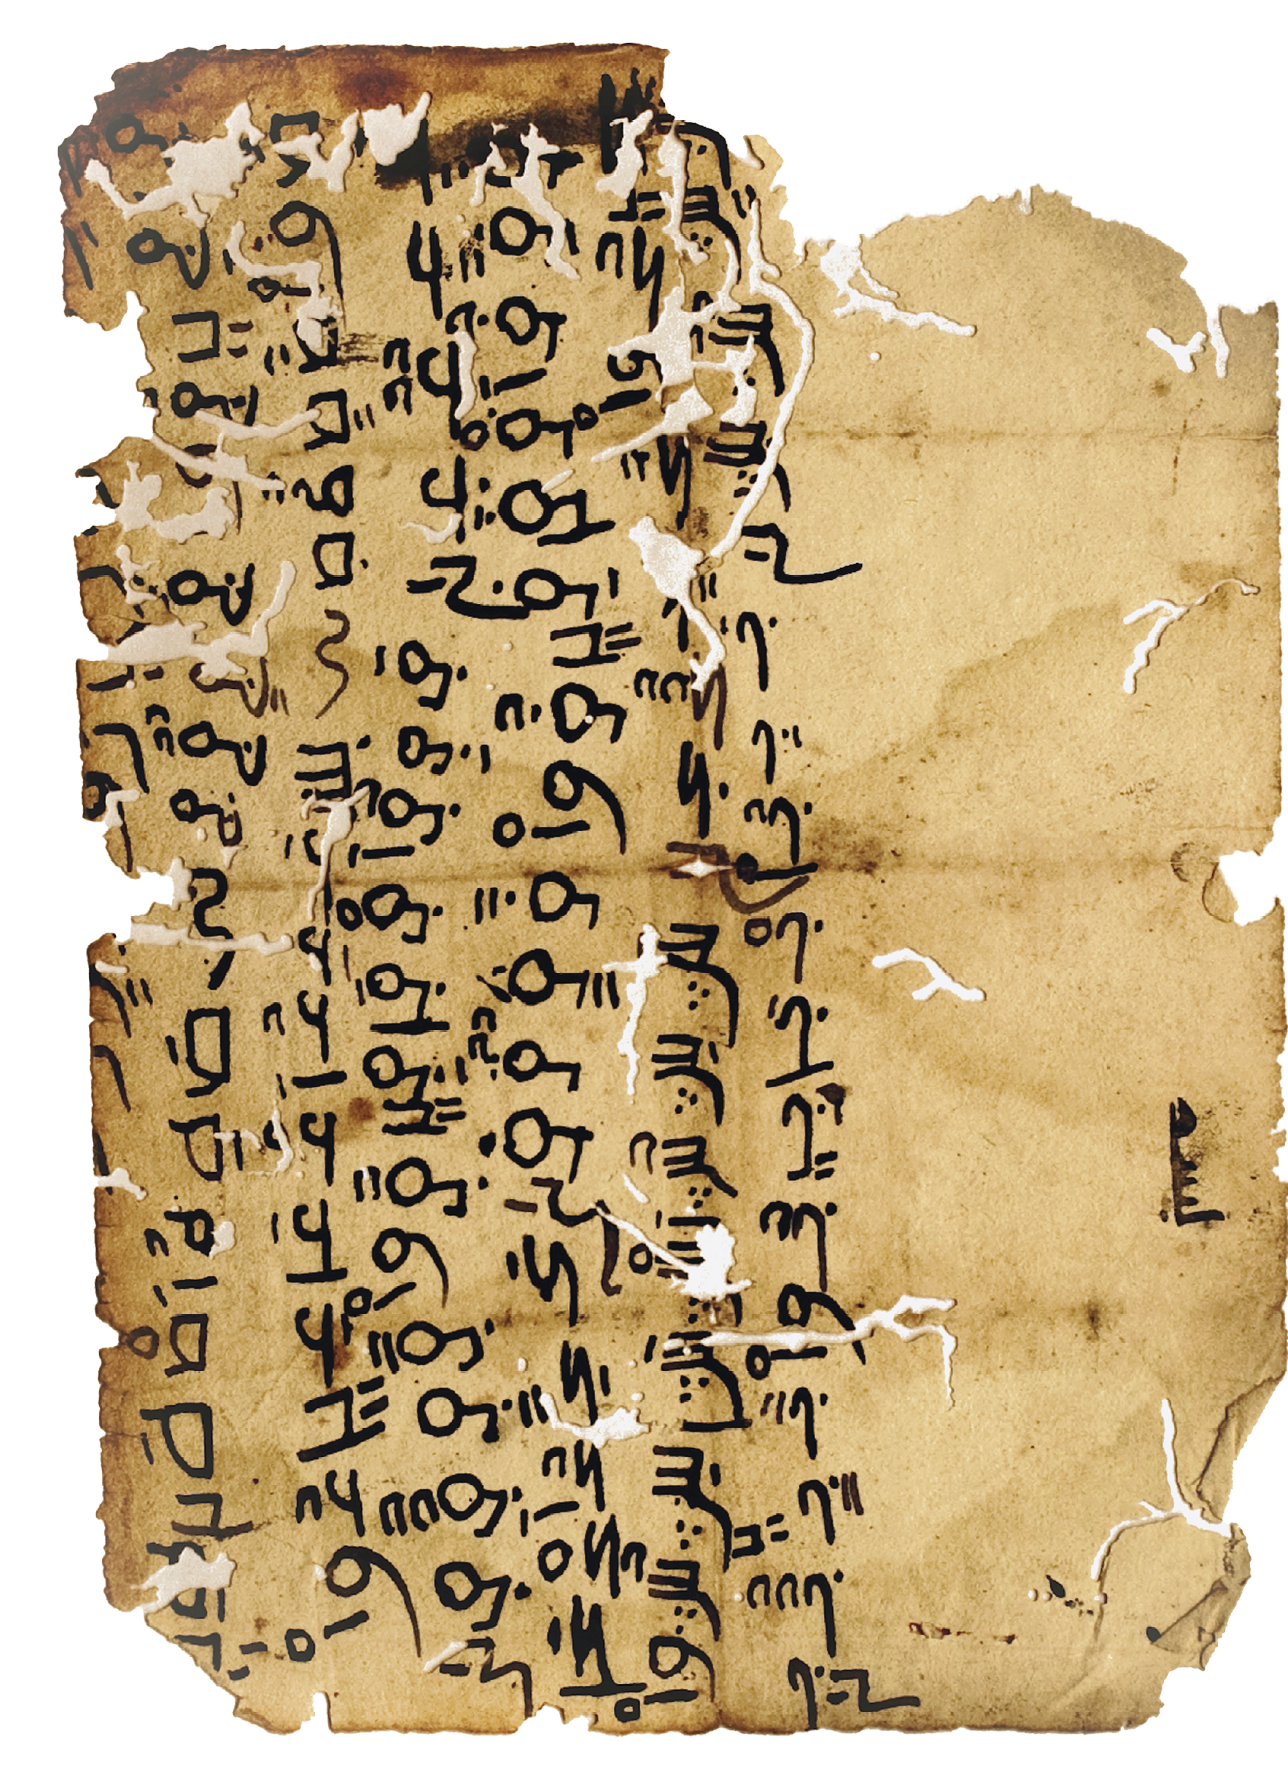 Fotografia. Parte de um manuscrito antigo, com manchas e rasgos. Há texto escrito em árabe, em cor preta, alinhados em colunas no centro e à esquerda da folha.